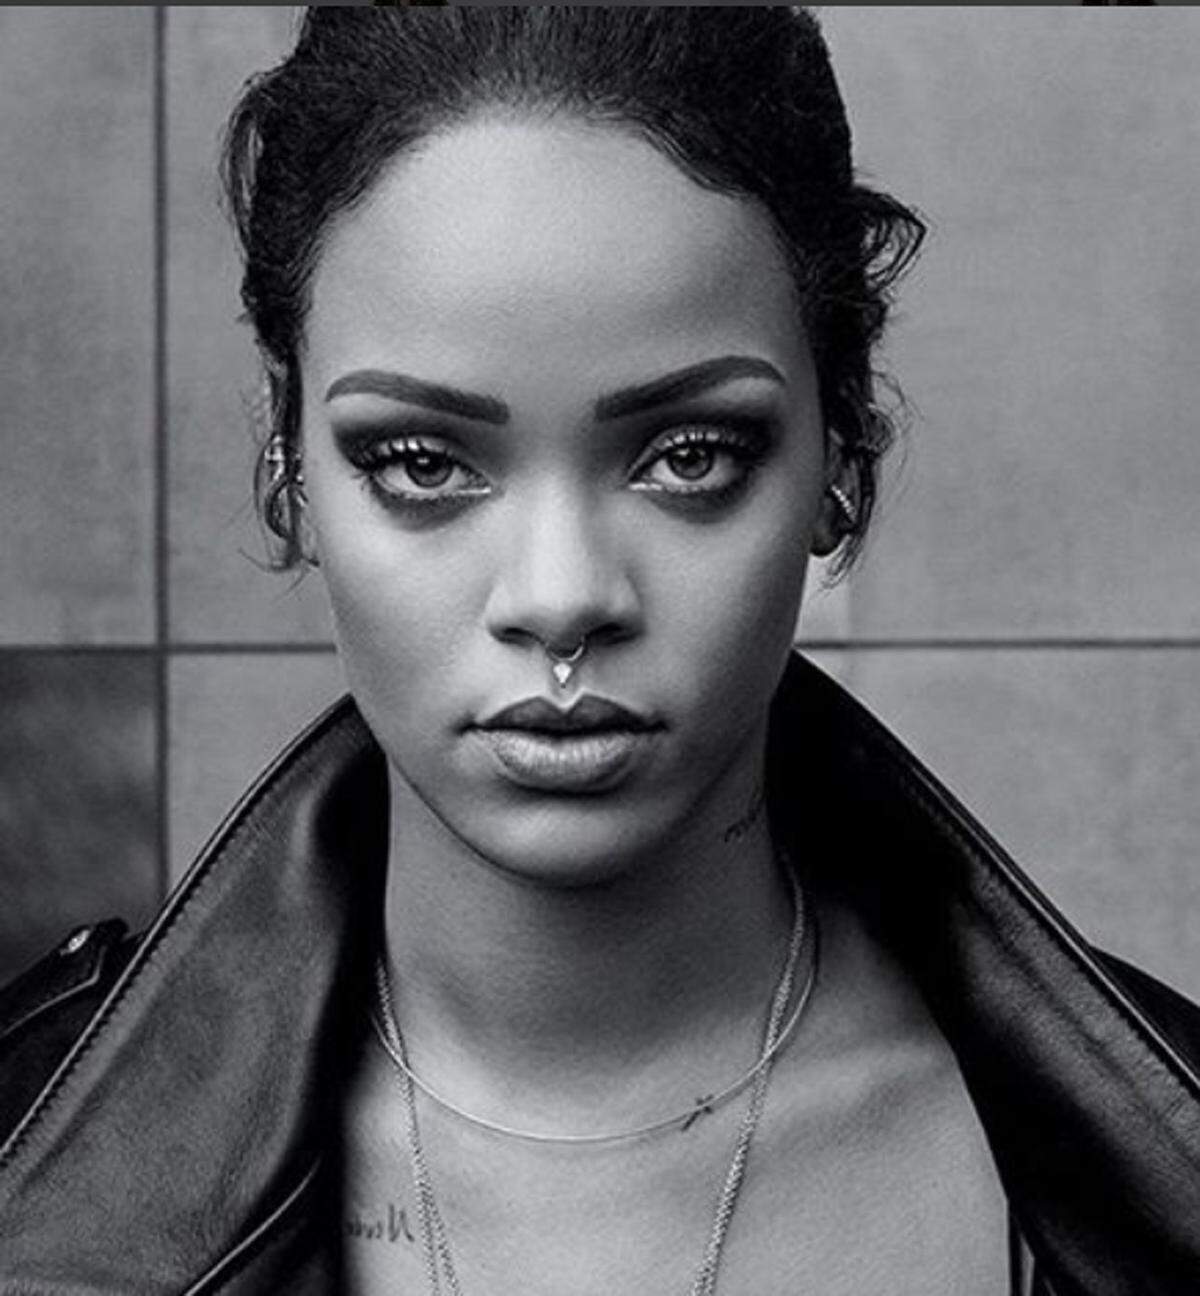 Das Nasenpiercing (echt oder nicht) war eines der Trend-Accessoires, auch Stars wie Rihanna wurden damit gesehen und fotografiert. 2017 ist es jedoch kein Must Have mehr.